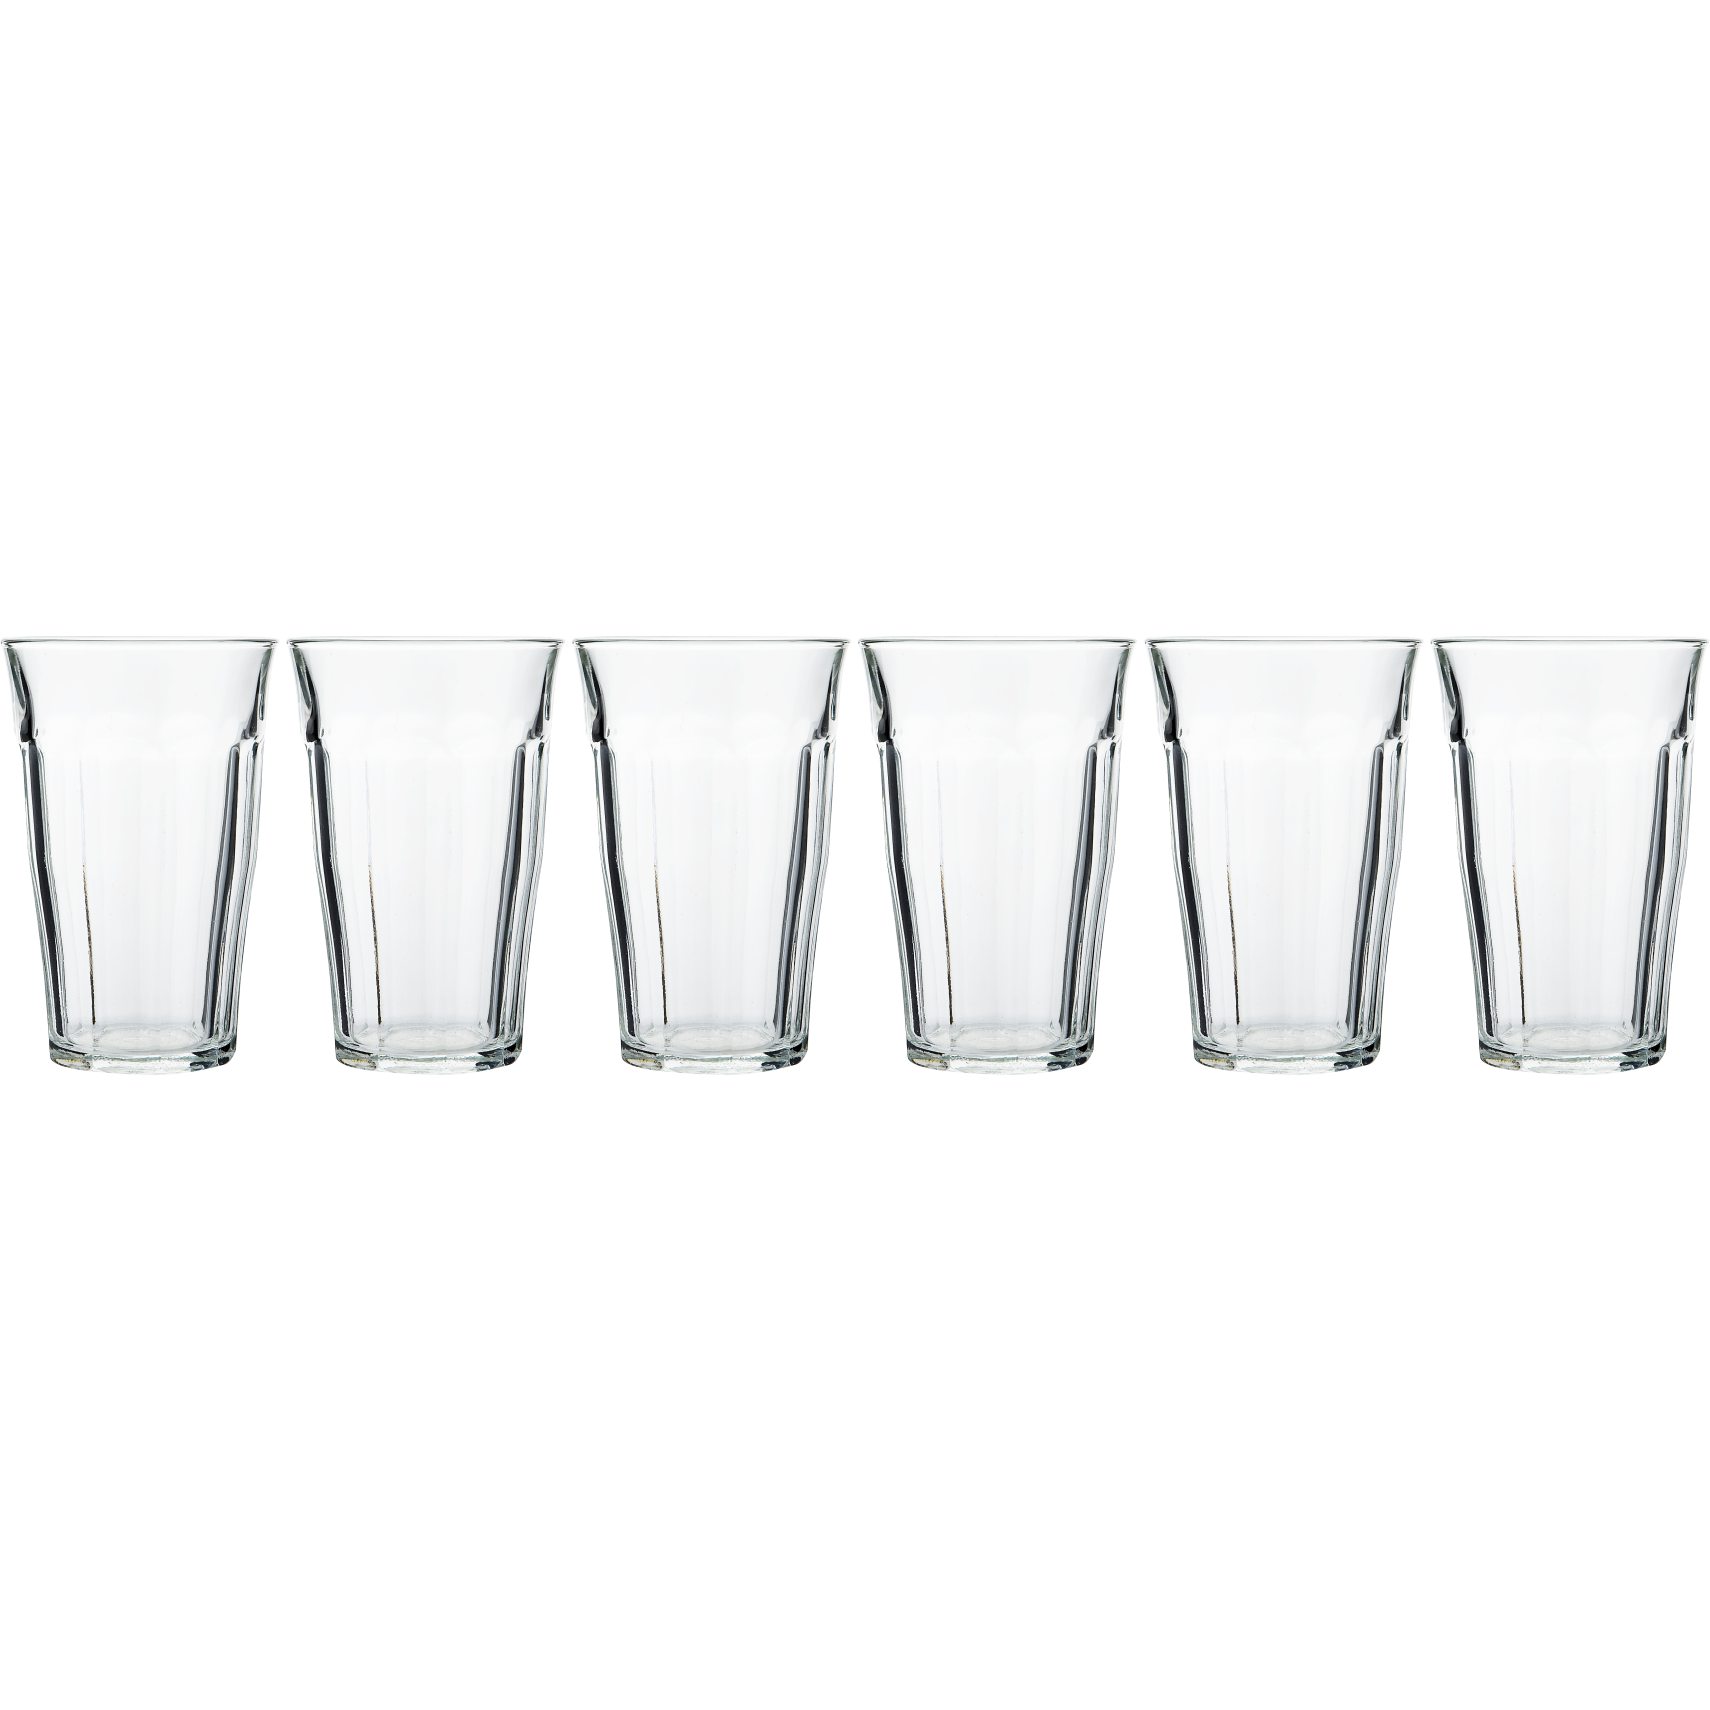 Picardie Vattenglas 6 st per förpackning - Genomskinligt härdat glas och set med 6 st